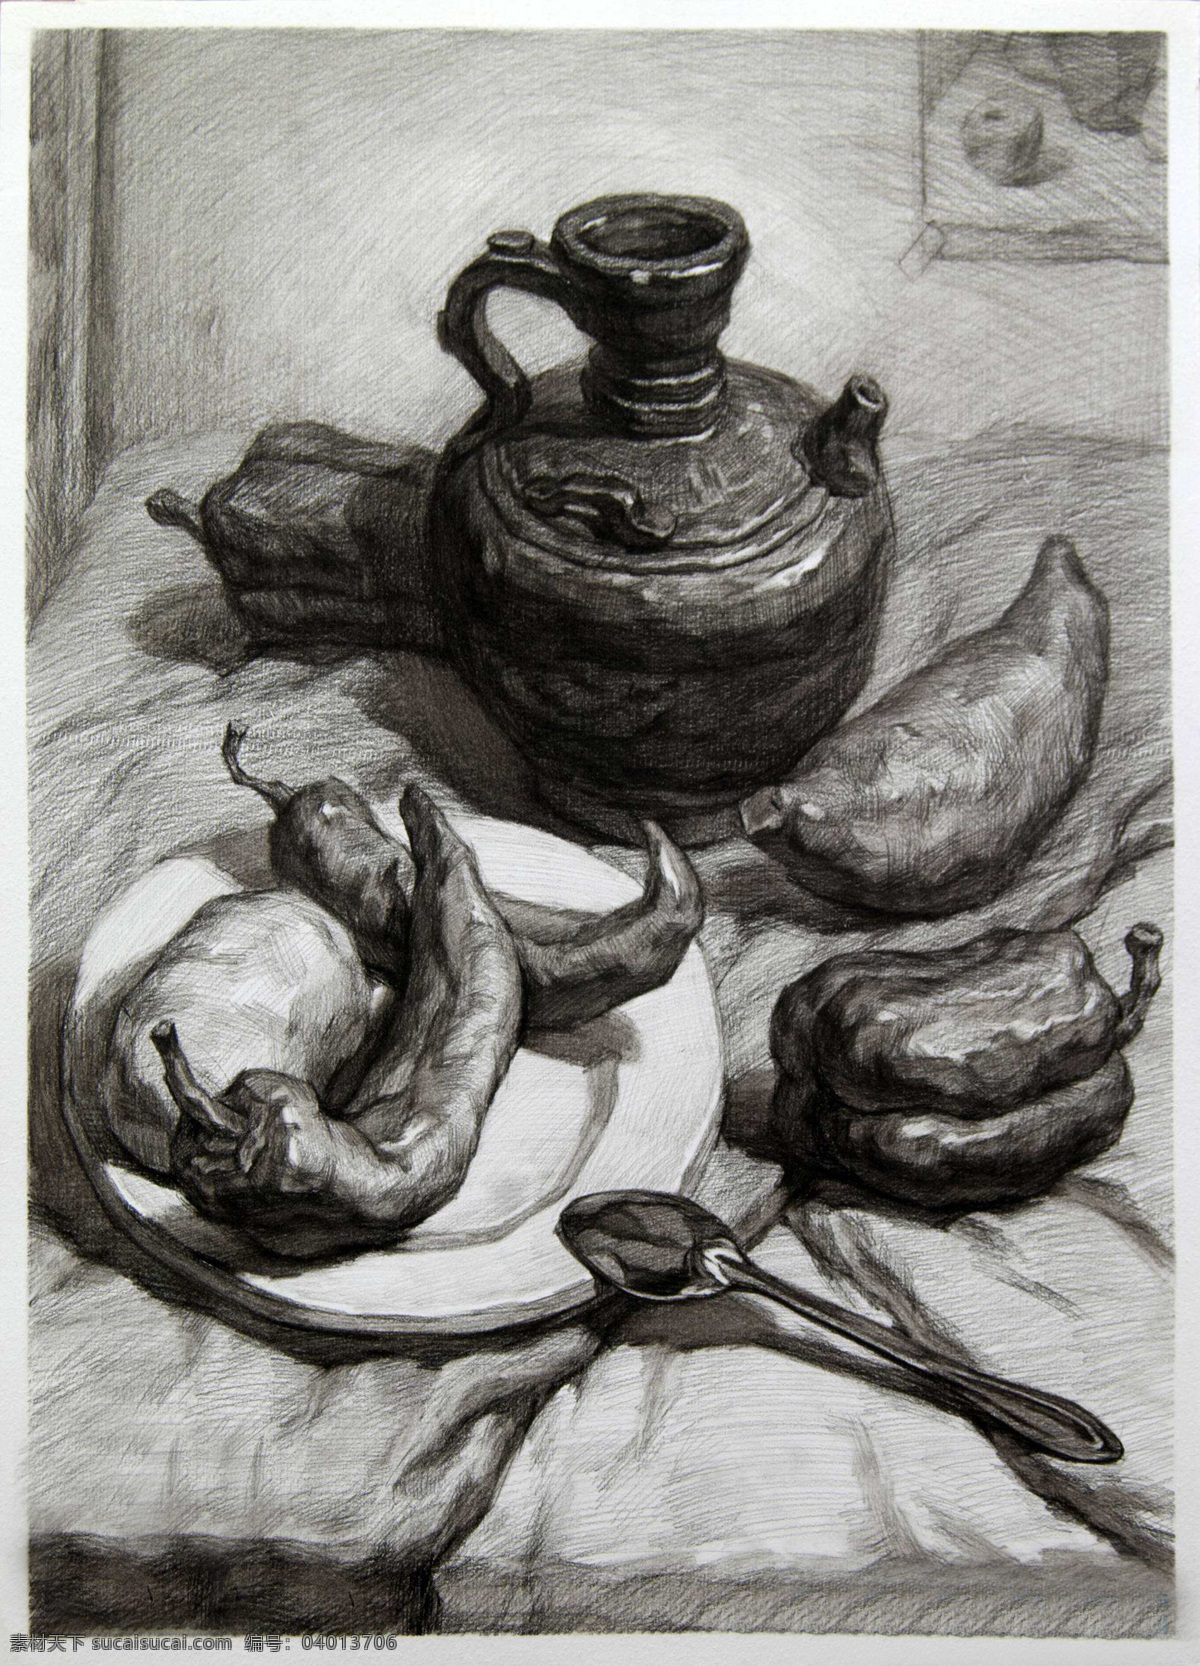 素描 素描静物 静物素描 素描作品 茶壶 辣椒 盘子 艺术绘画 文化艺术 绘画书法